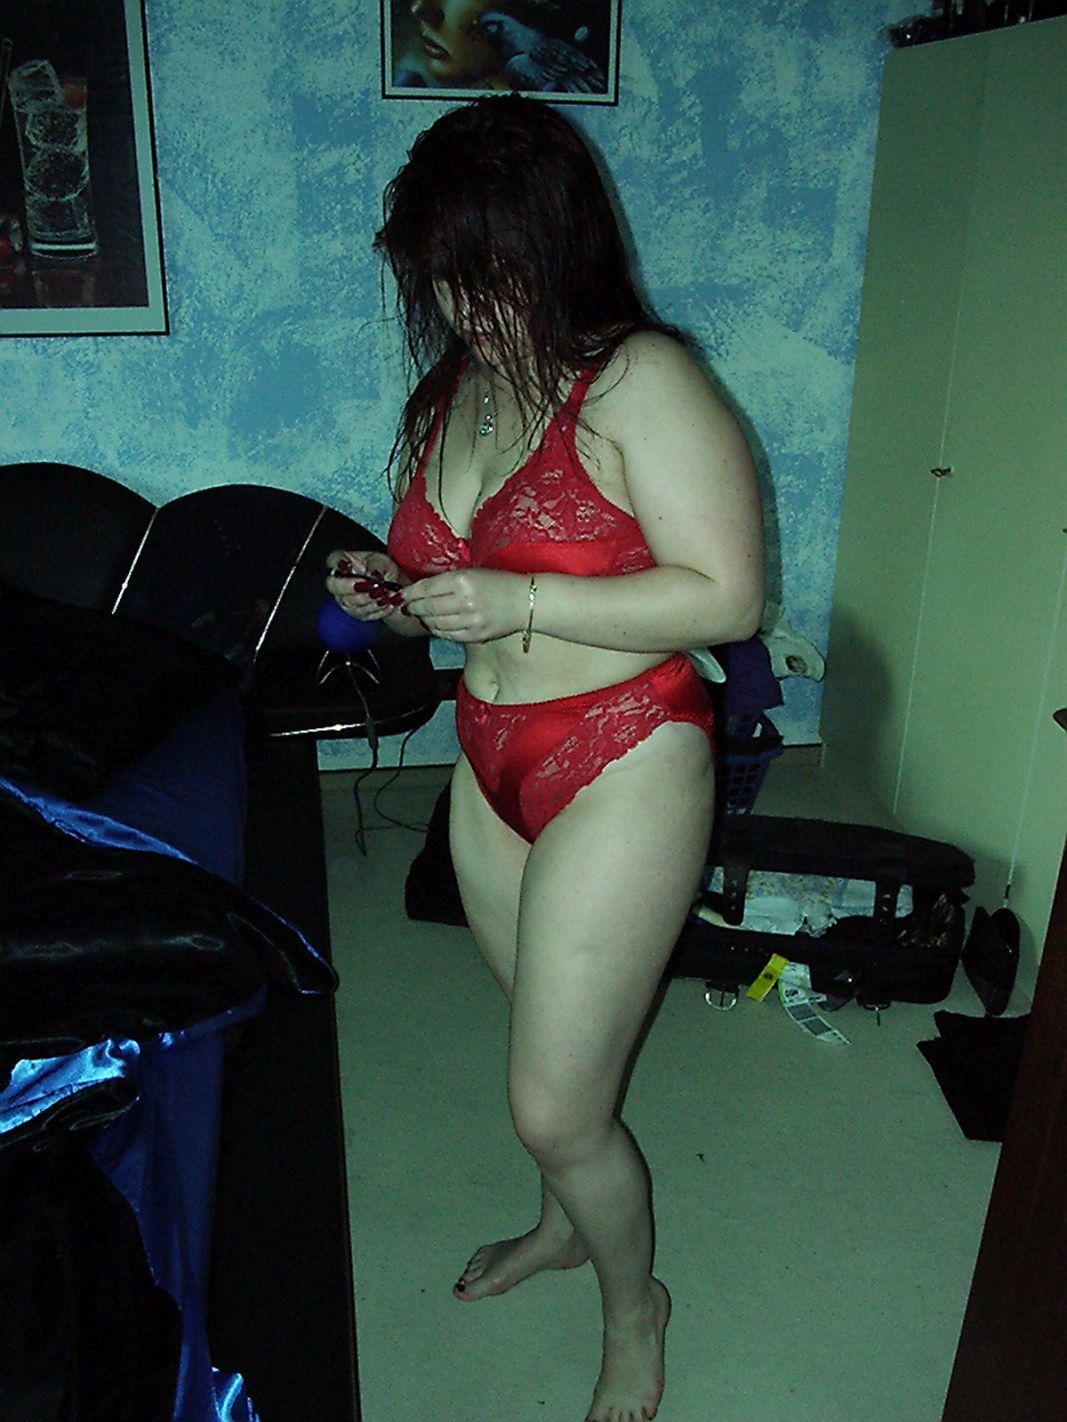 molliges Girl in roter Unterwäsche